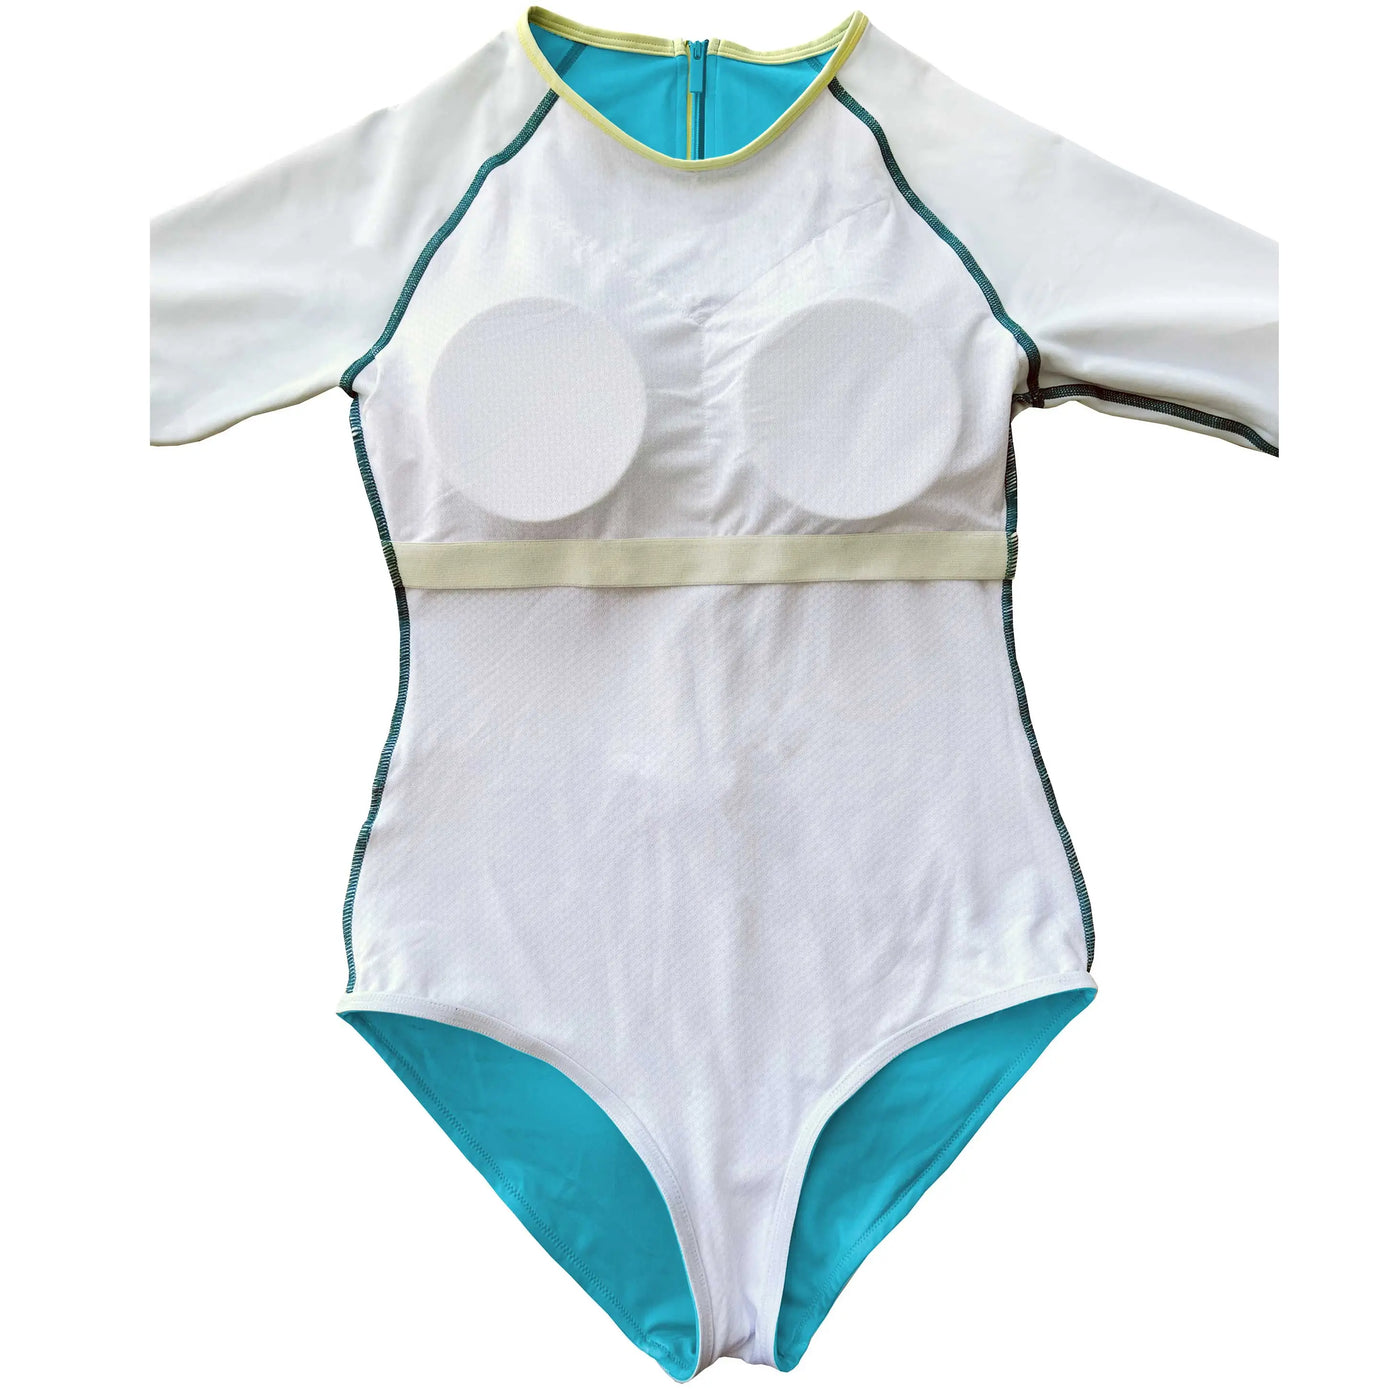 Long Sleeve Swimsuit for Women UPF 50+ | Art - Lotus